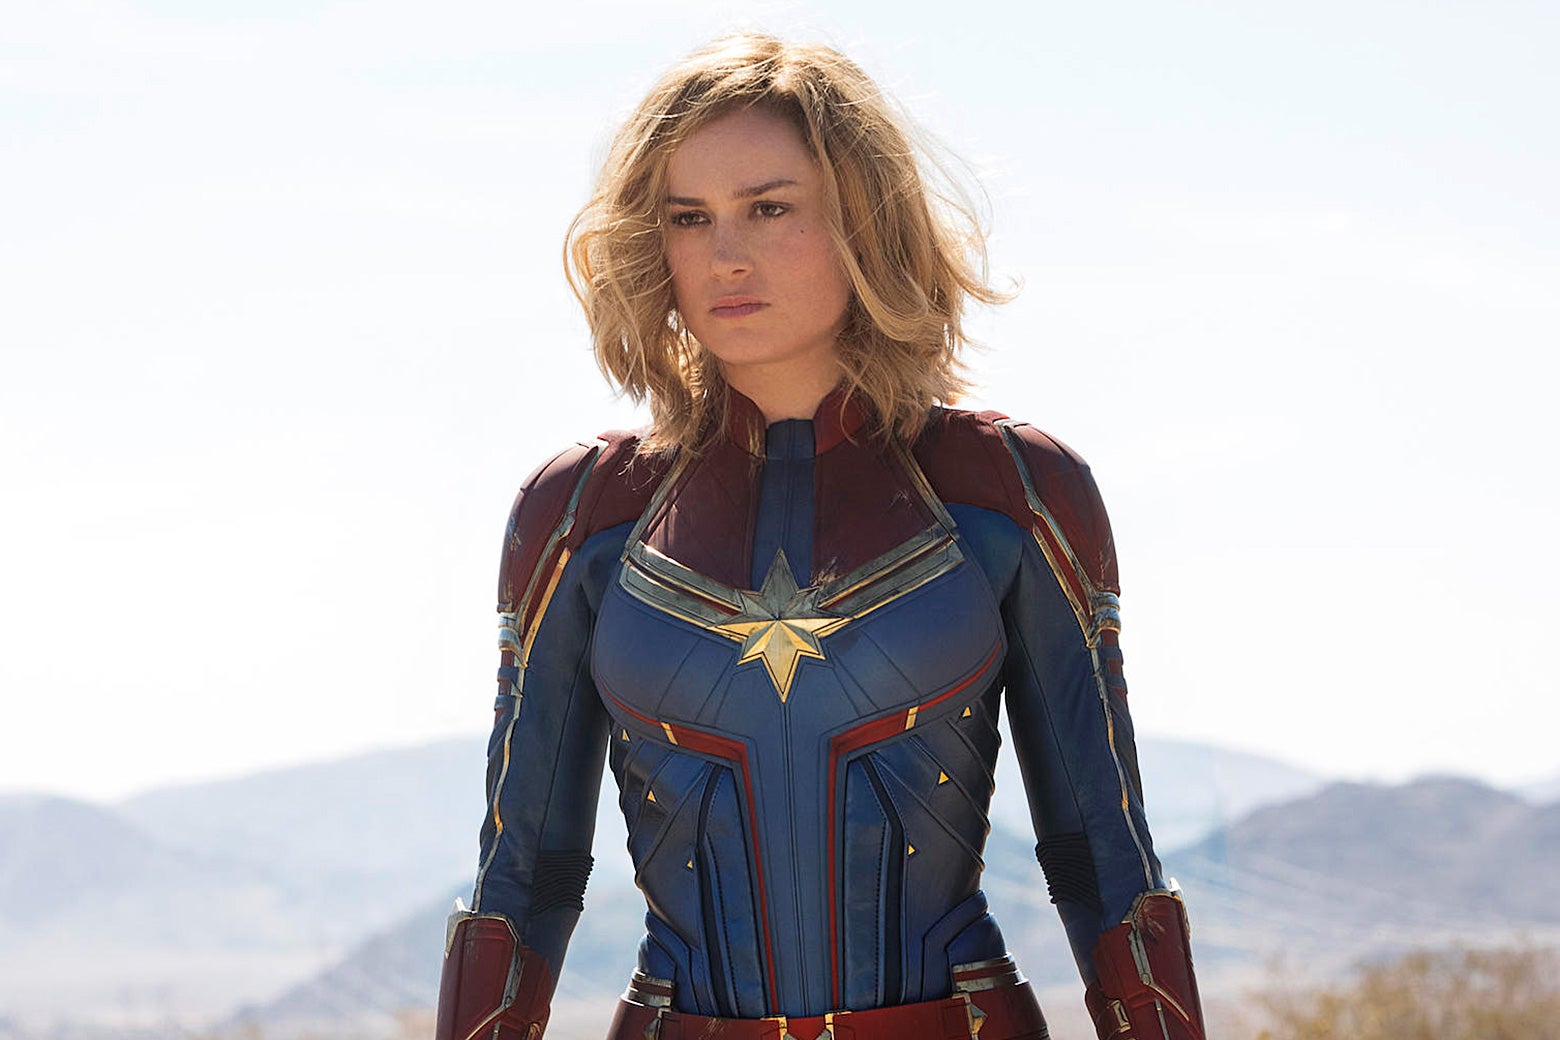 Marvel Femme Avengers Endgame Glowing Logo Tank Top 